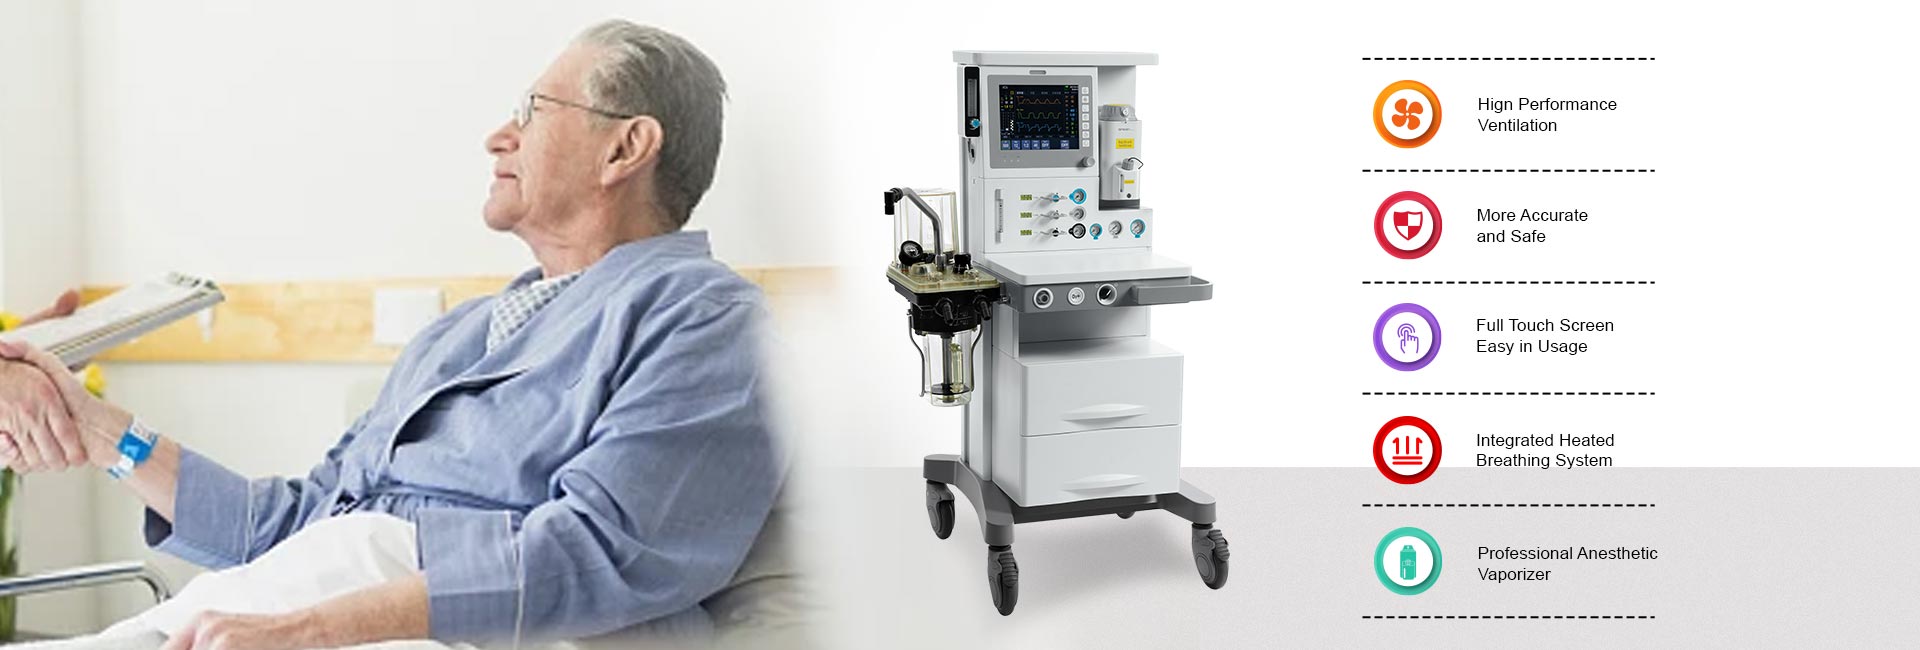 CENAR-30 Anesthesia Machine(图4)